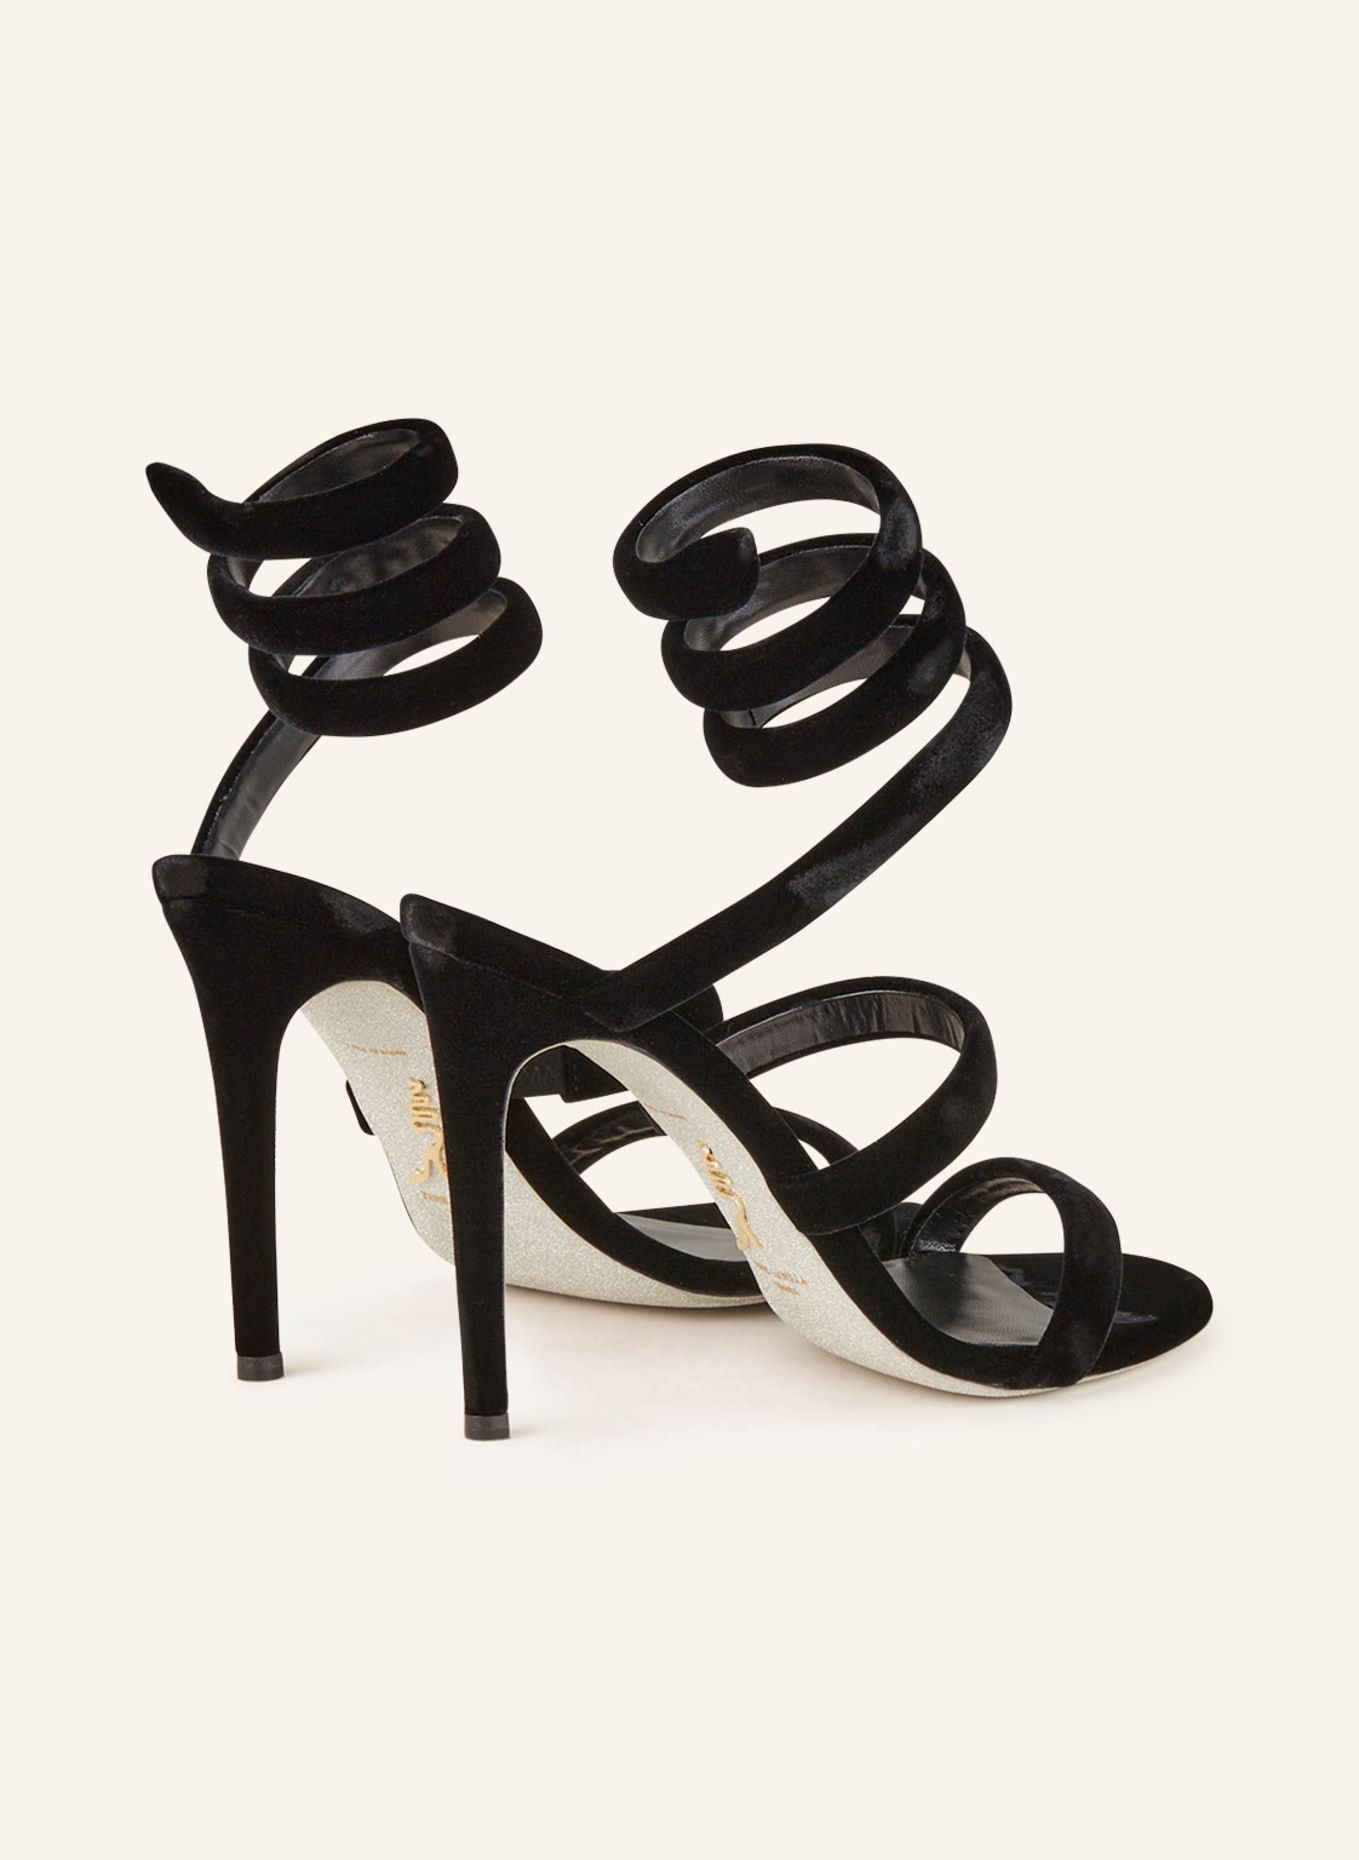 RENE CAOVILLA Sandals, Color: BLACK (Image 2)